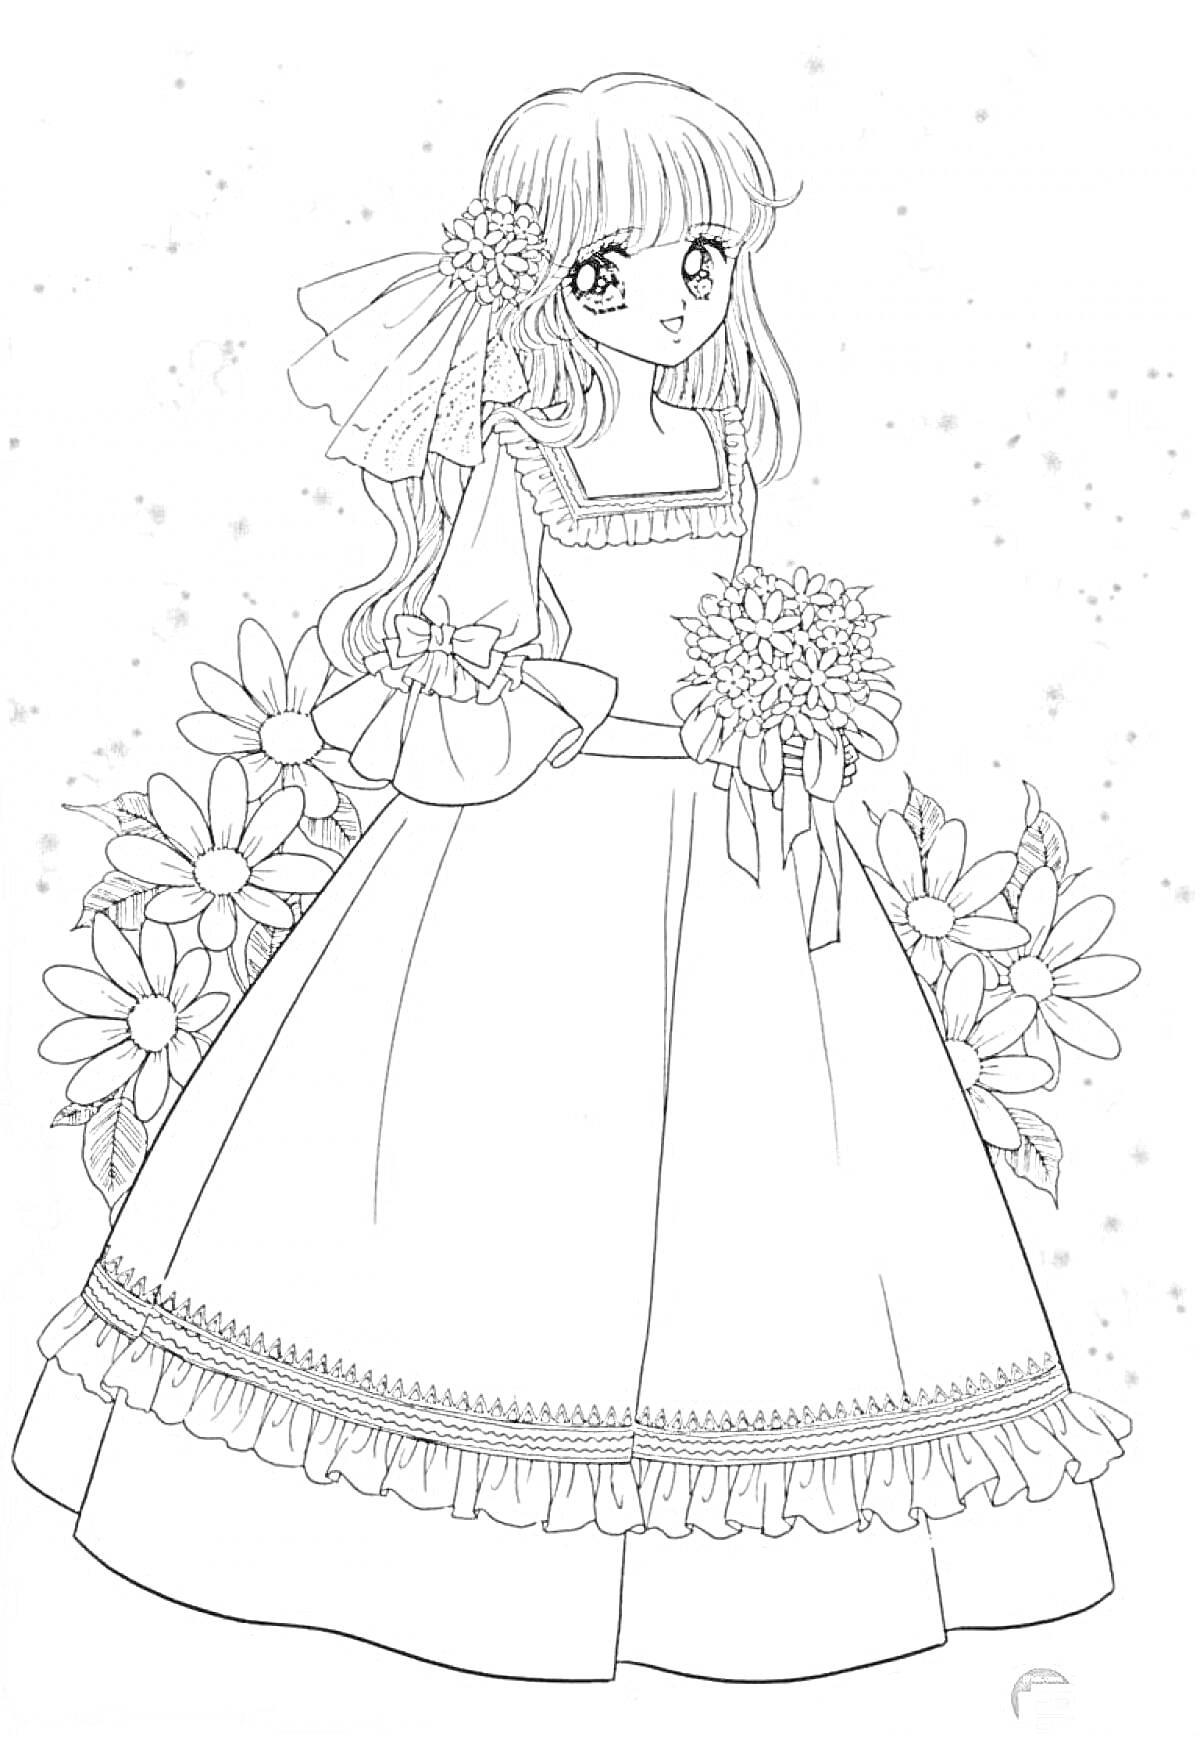 Раскраска Девушка в длинном платье с цветами в руках и вокруг нее, цветы в волосах, фон с точками